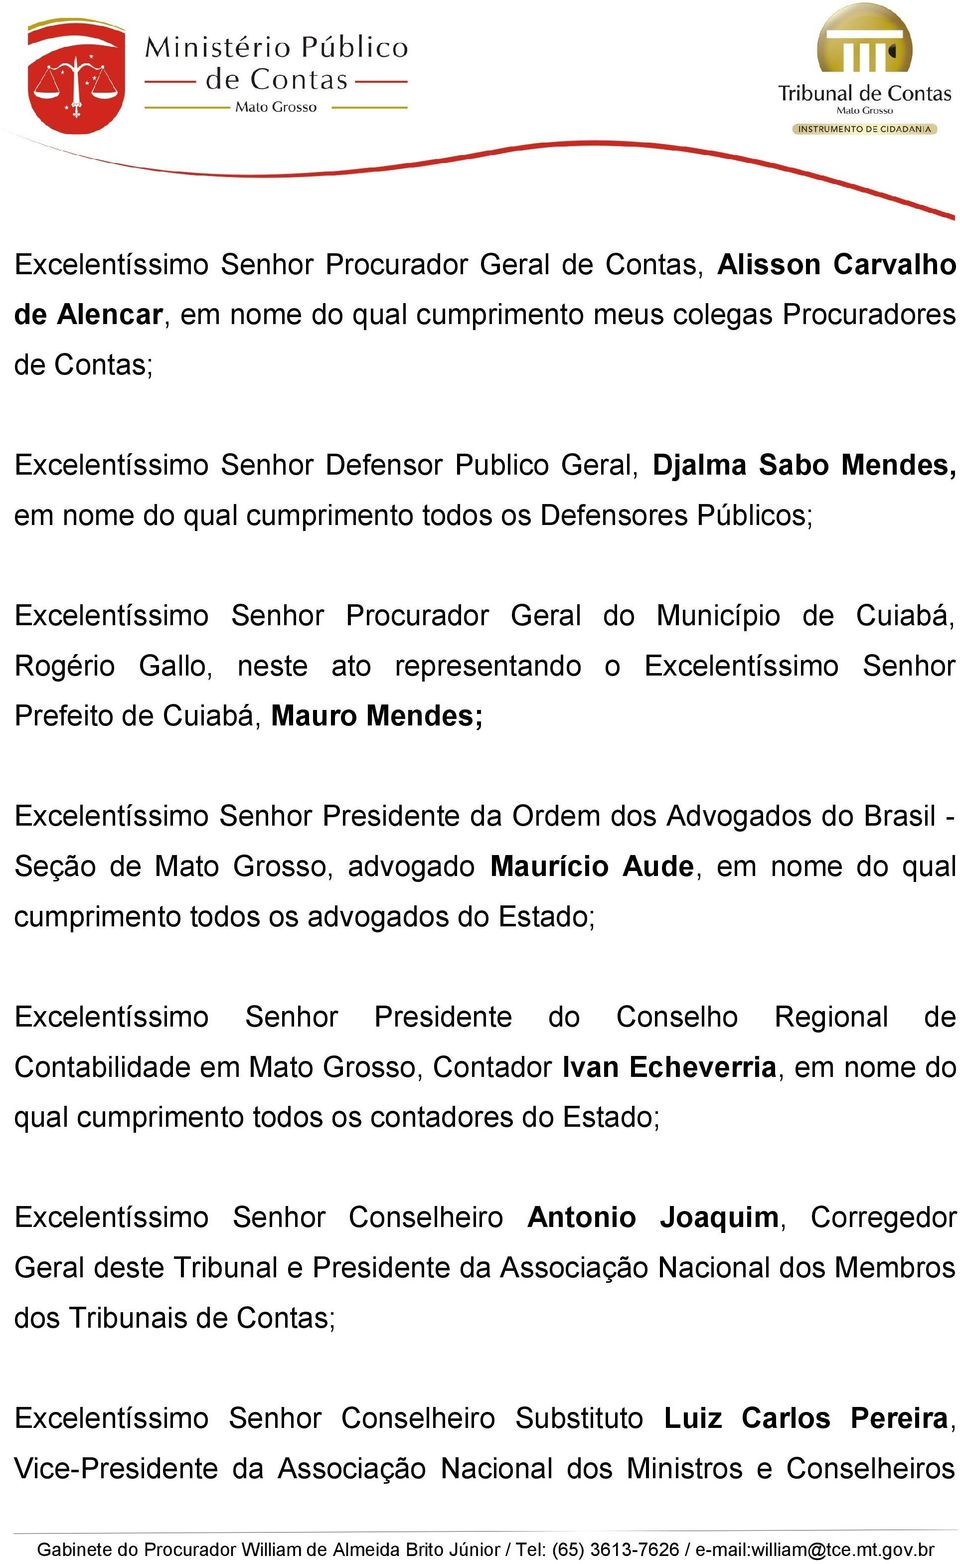 Prefeito de Cuiabá, Mauro Mendes; Excelentíssimo Senhor Presidente da Ordem dos Advogados do Brasil - Seção de Mato Grosso, advogado Maurício Aude, em nome do qual cumprimento todos os advogados do